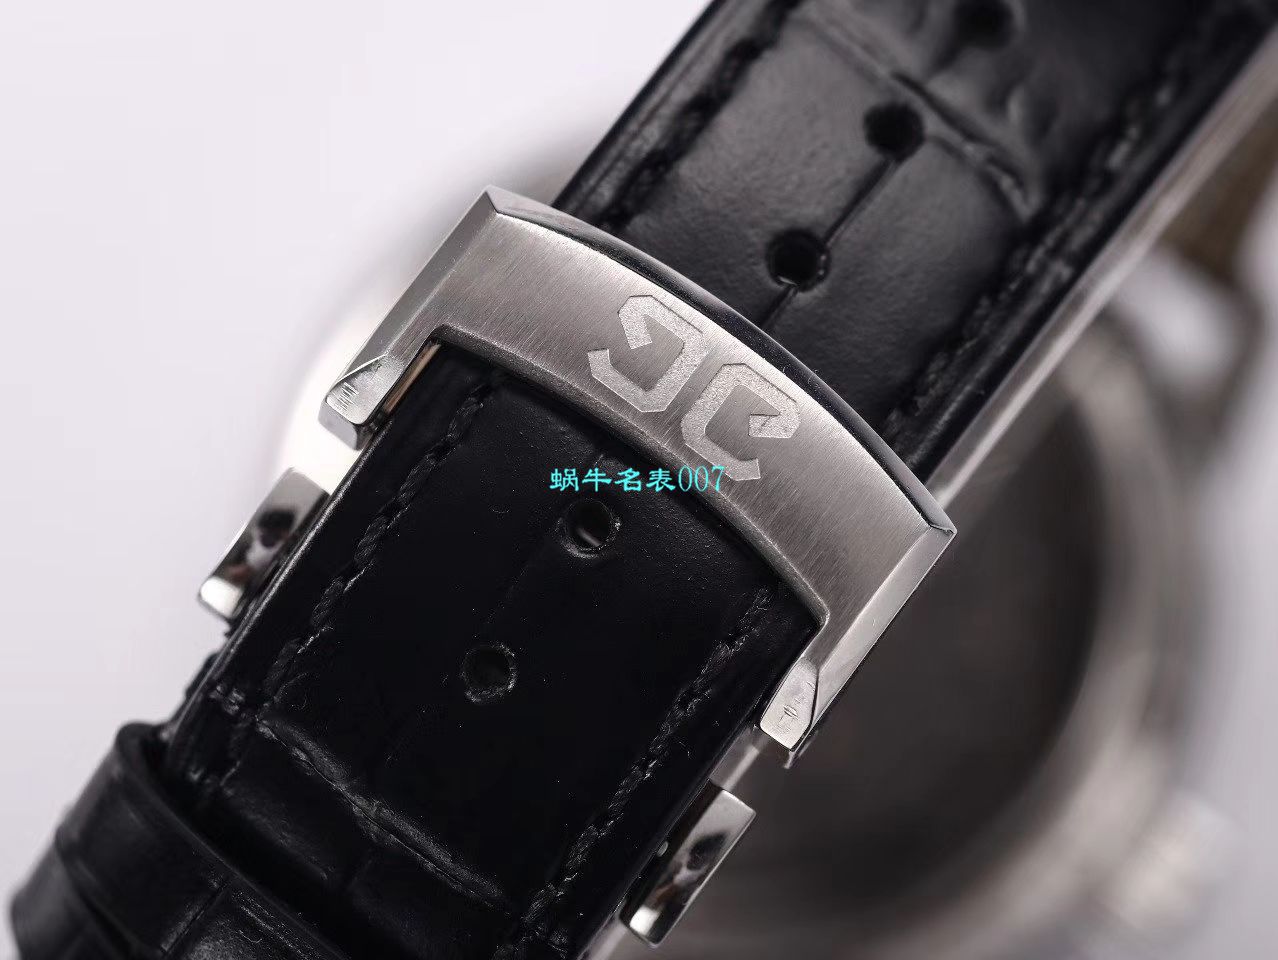 【TZ厂超A高仿手表】格拉苏蒂原创偏心系列1-91-02-02-02-30腕表 / GLA059